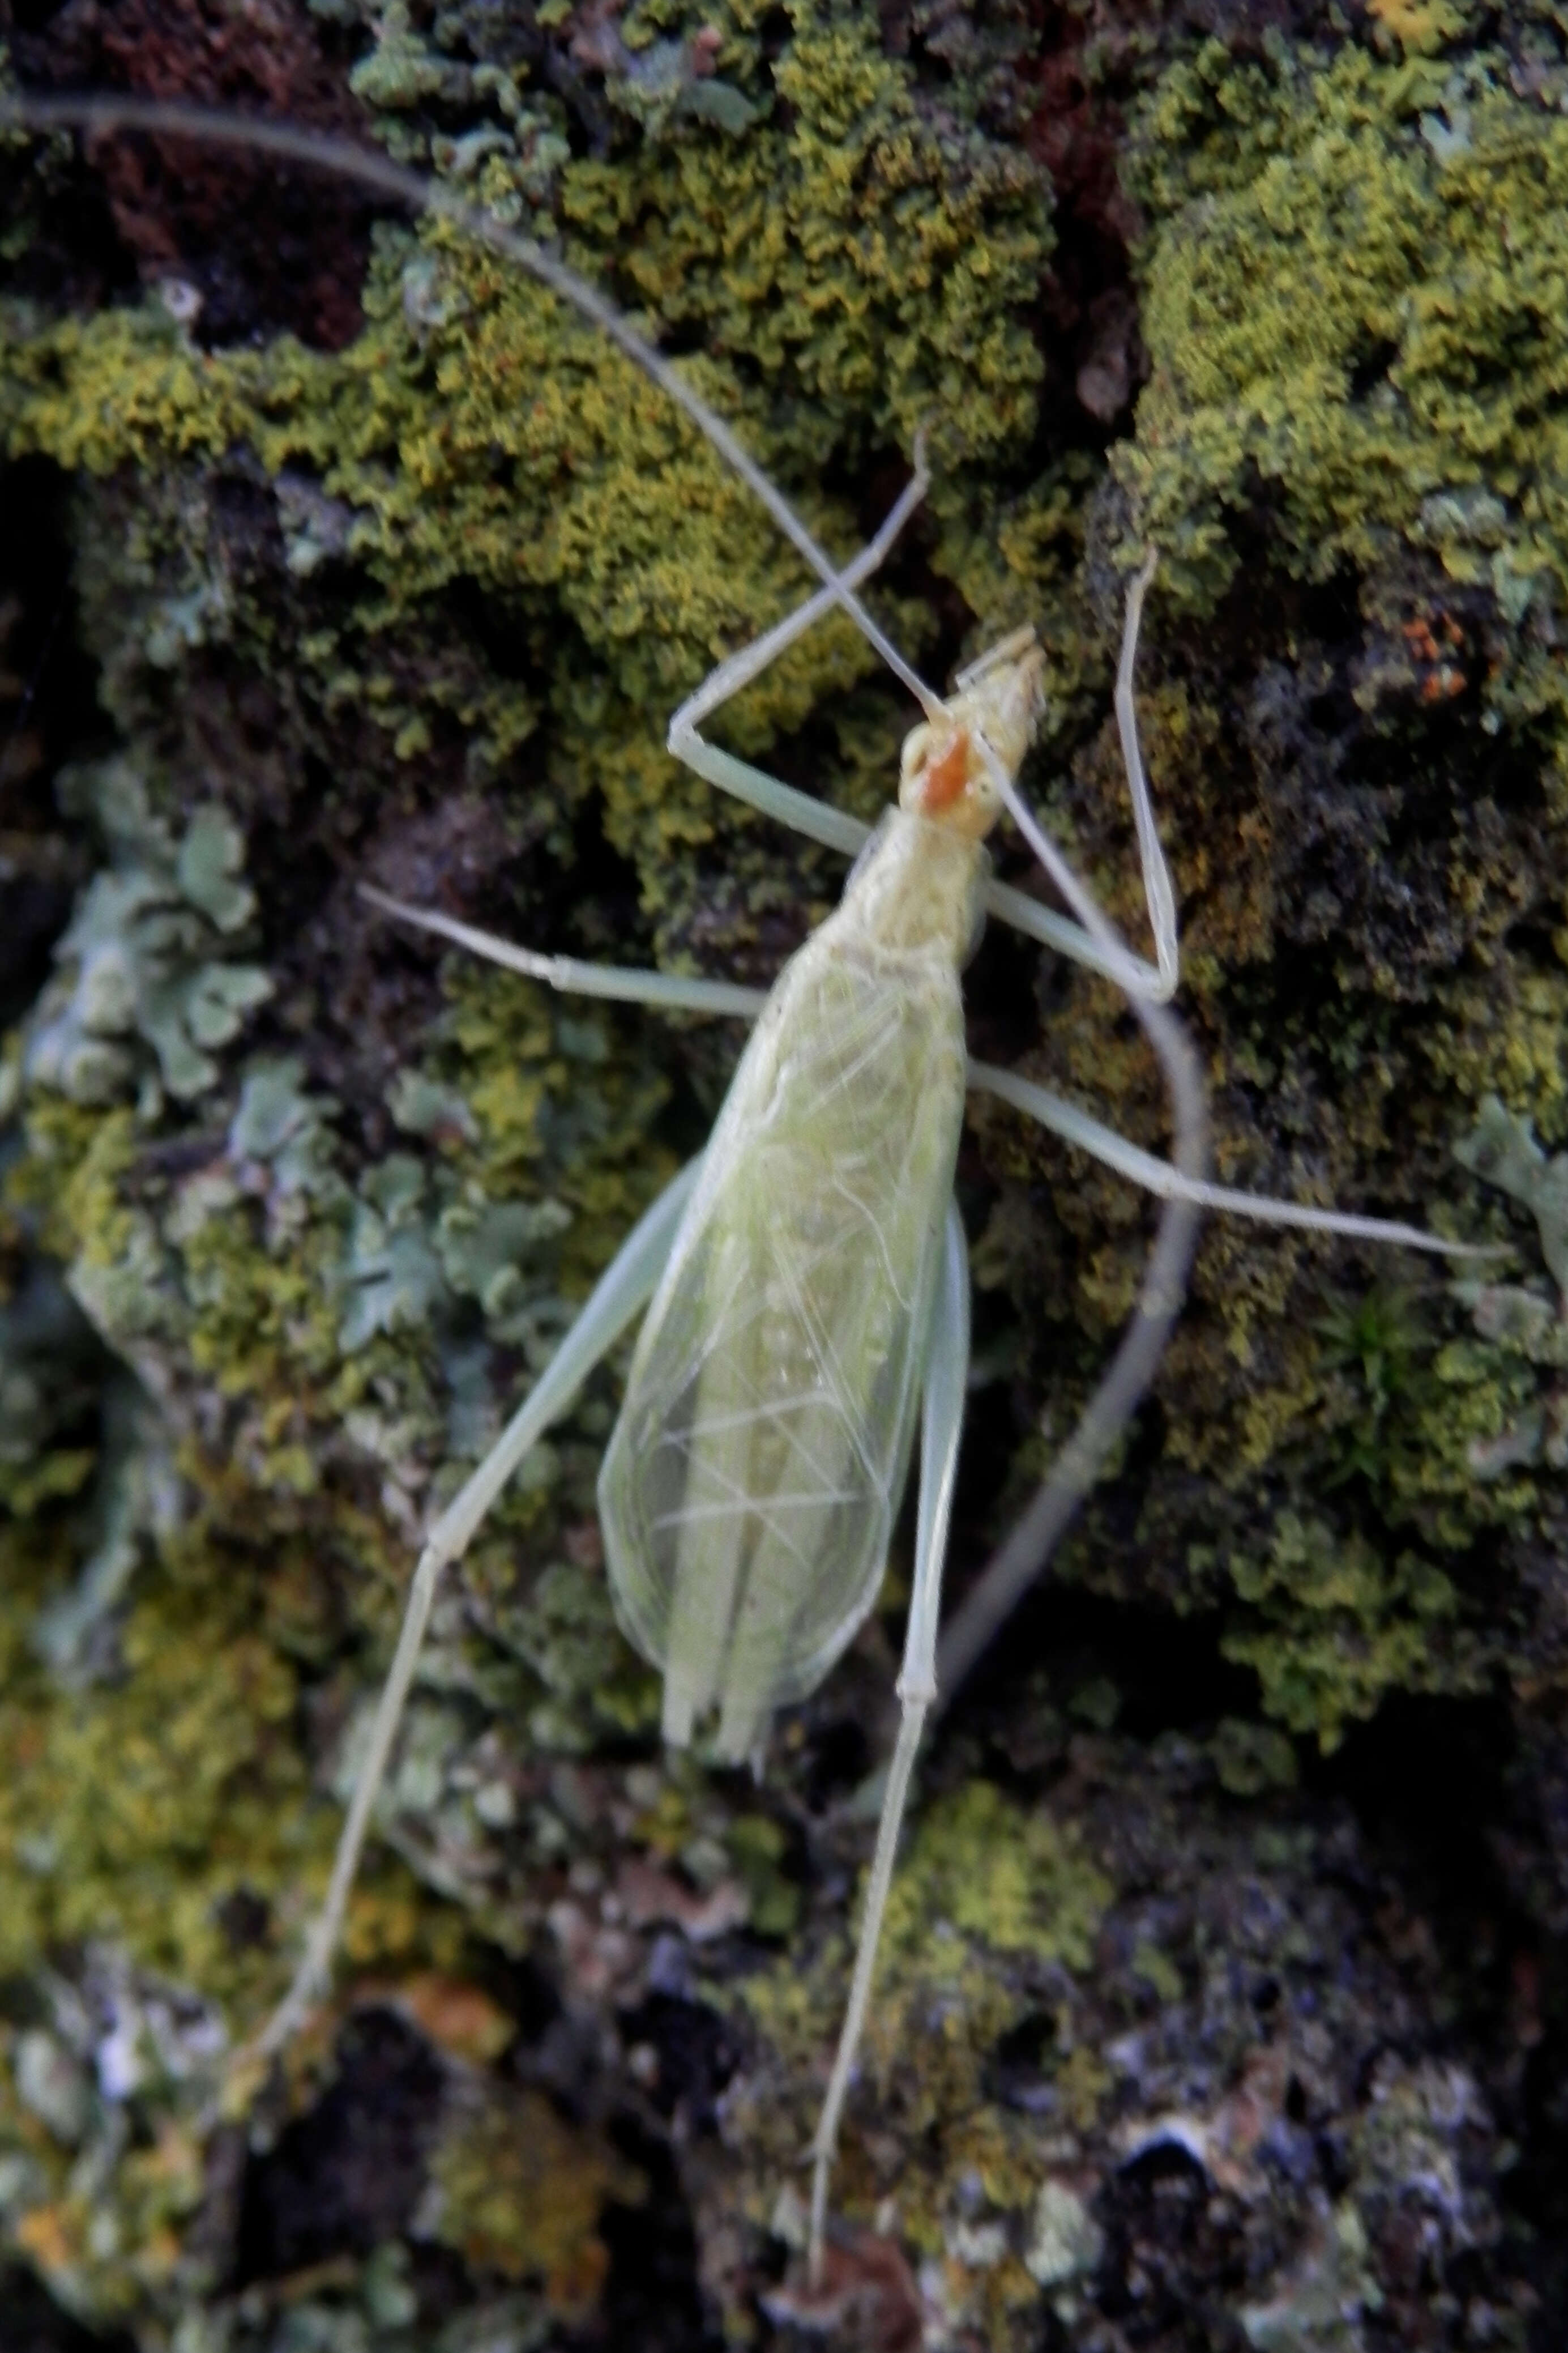 Image of Narrow-winged Tree Cricket